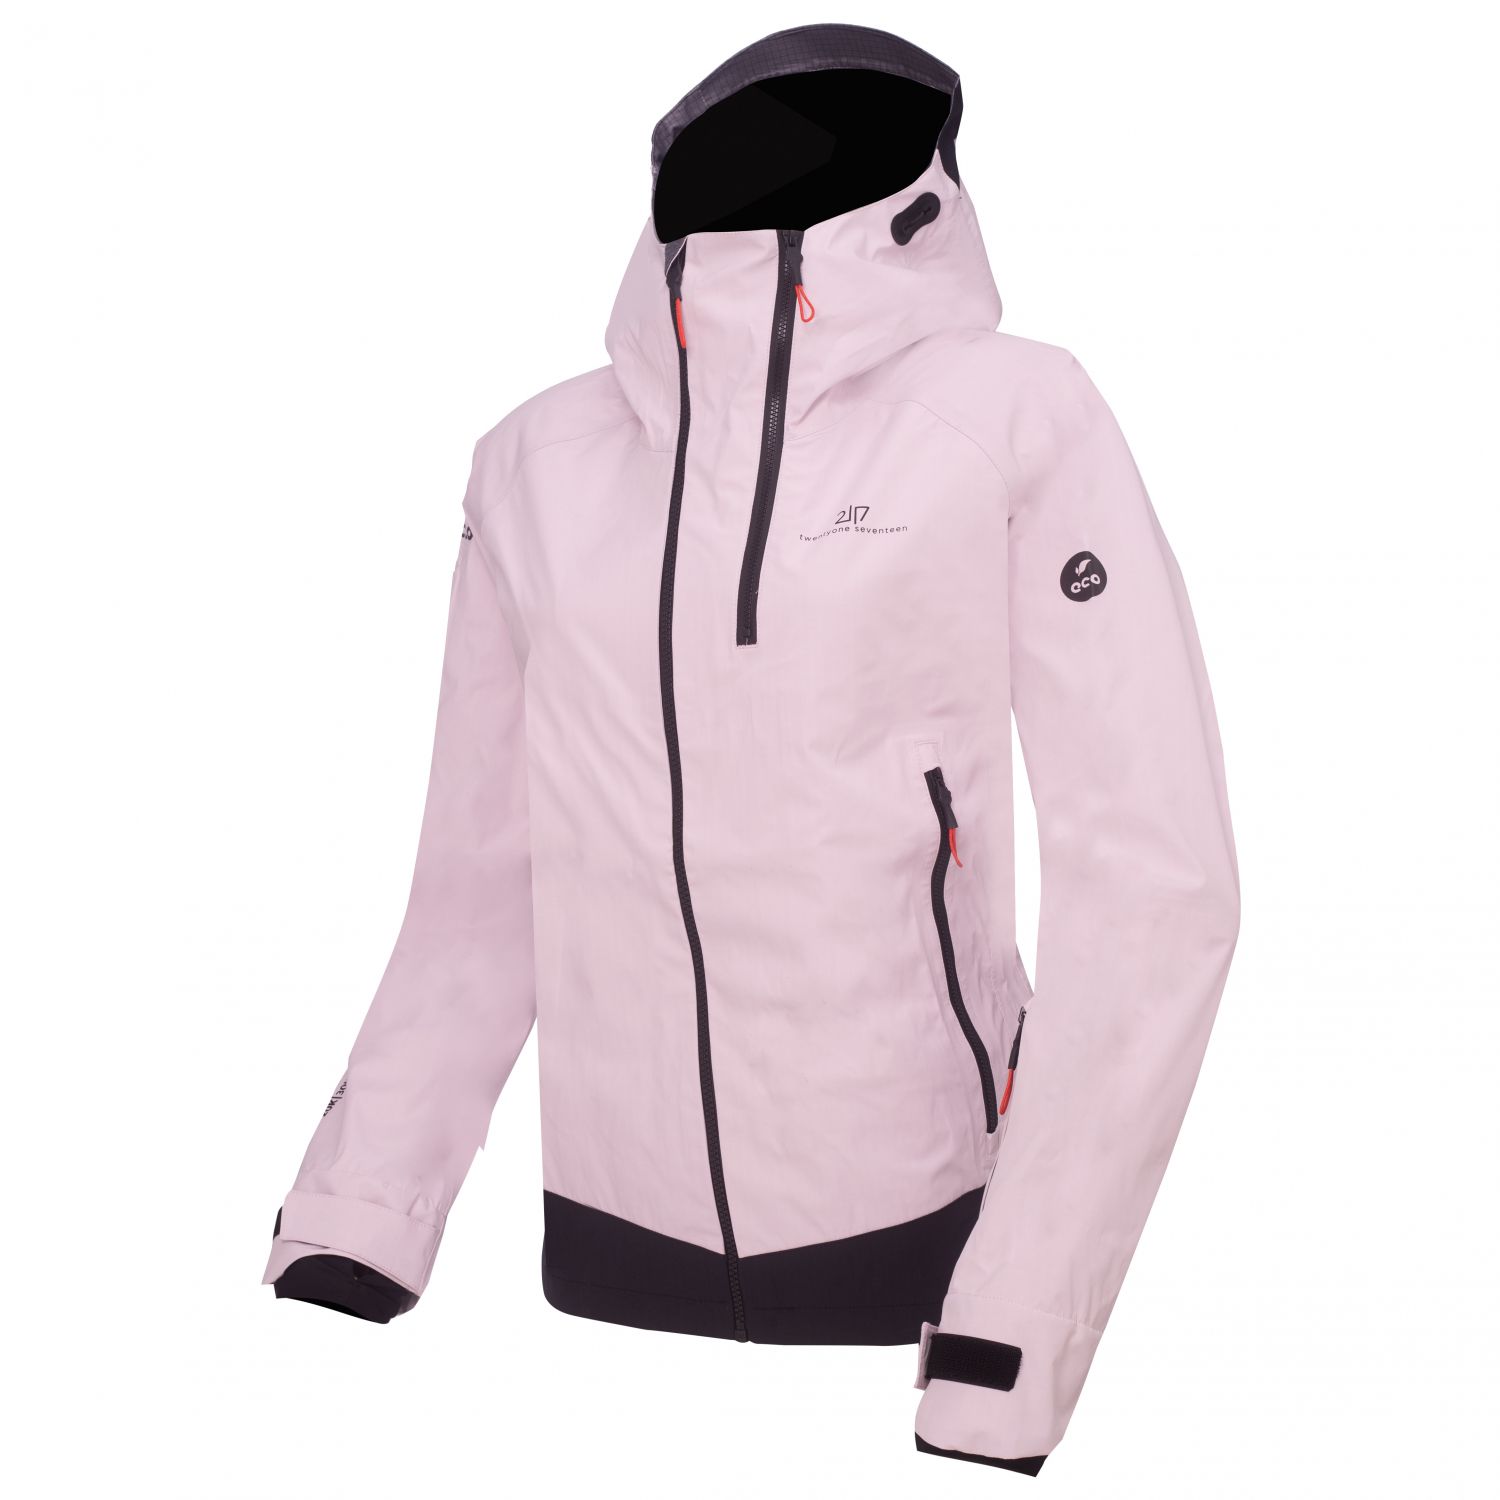 2117 of Sweden Kuolpa, shell jacket, women, soft pink